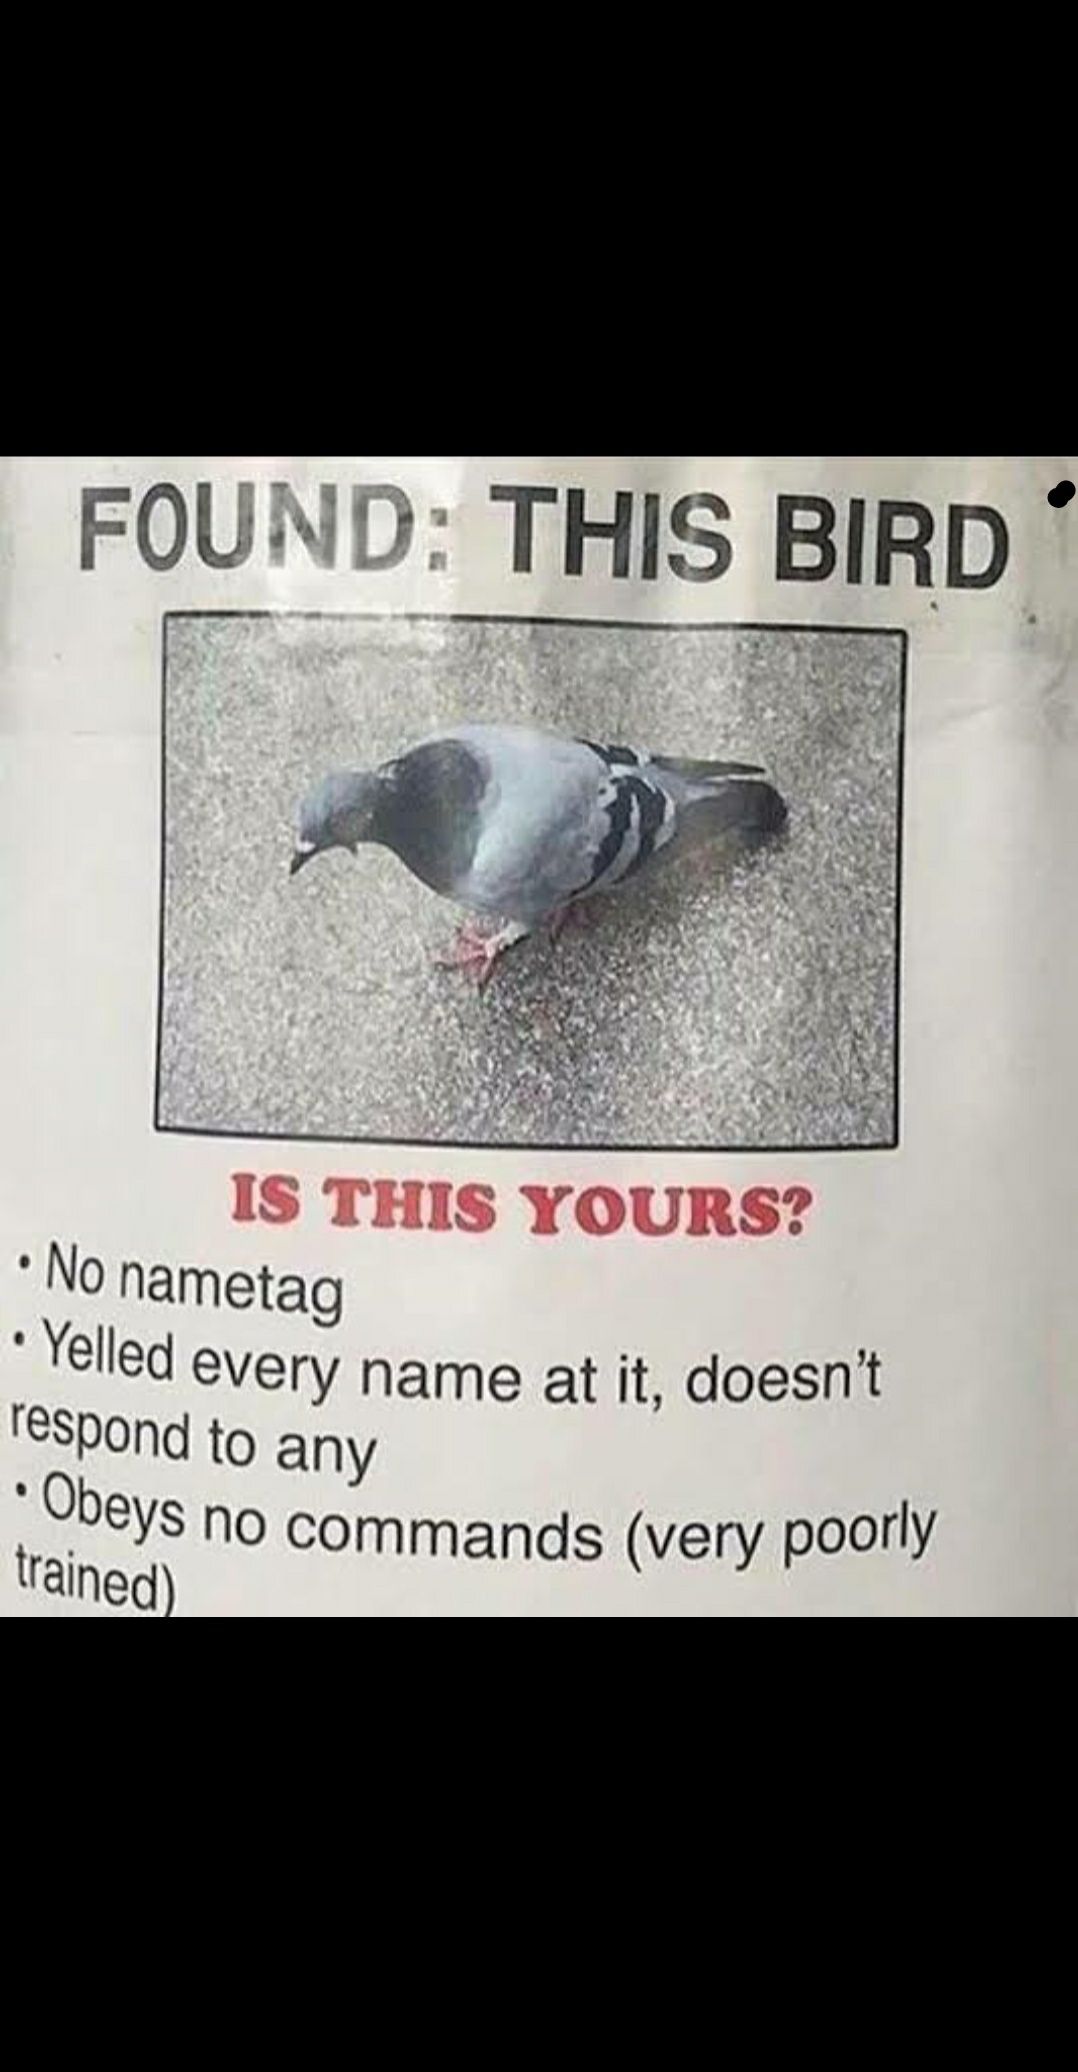 Anyone lose a bird?